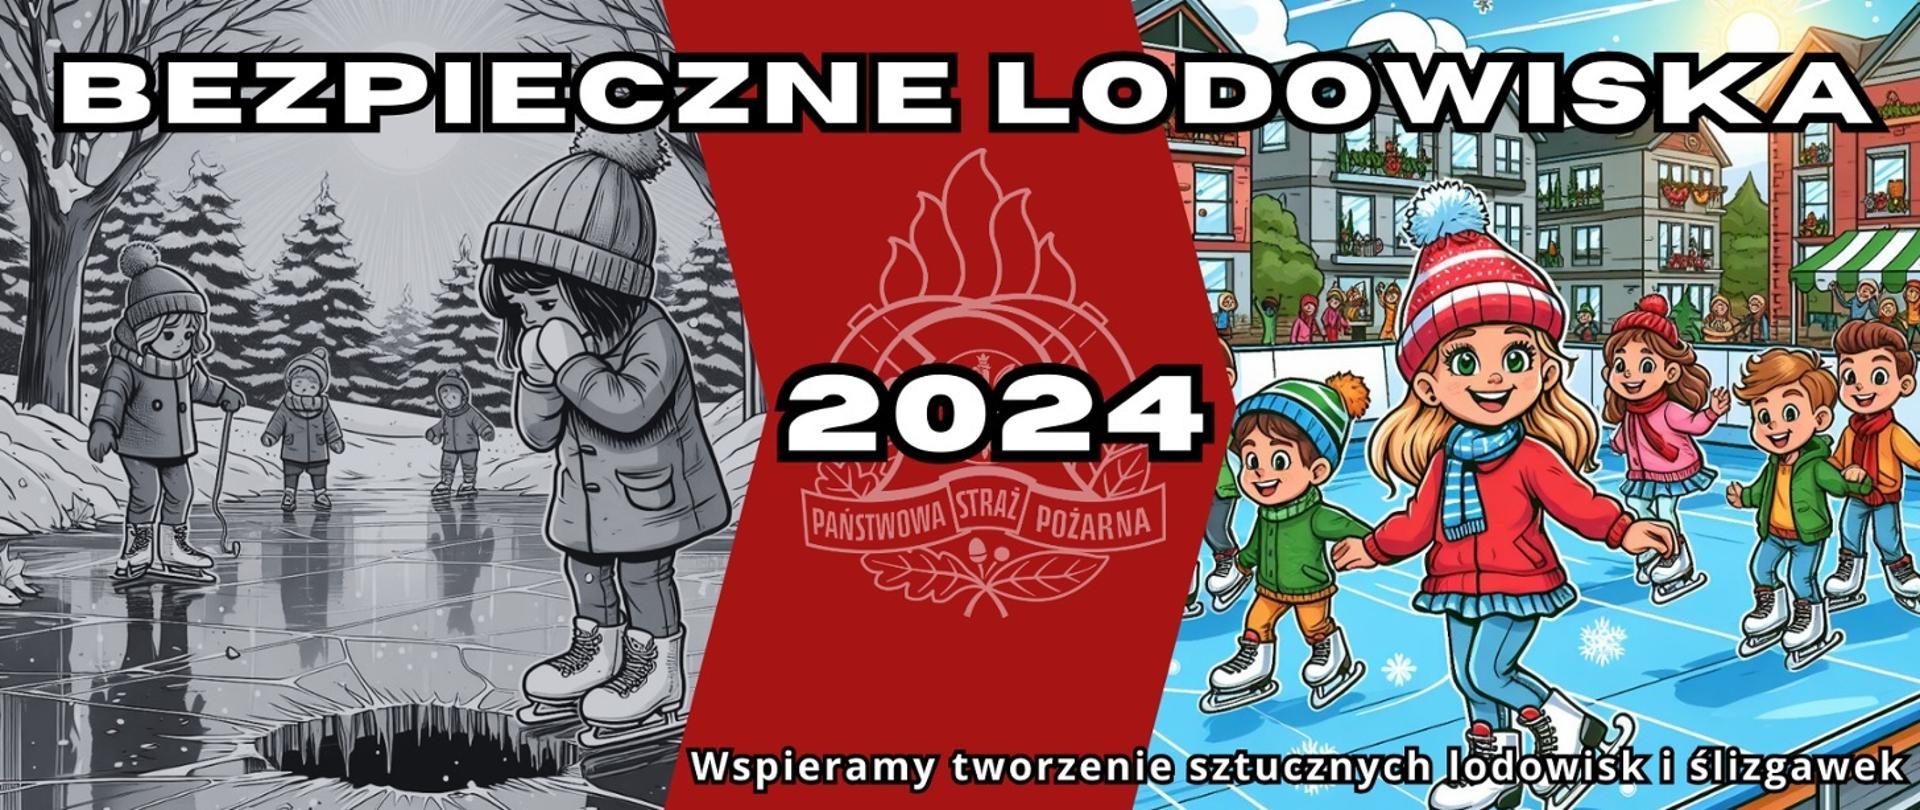 Zdjęcie przedstawia grafikę promującą akcję prowadzoną przez PSP dotyczącą bezpiecznych lodowisk w 2024 roku, na której znajdują się dzieci na wyznaczonym lodowisku oraz zamarzniętym akwenie, w tle logo PSP.